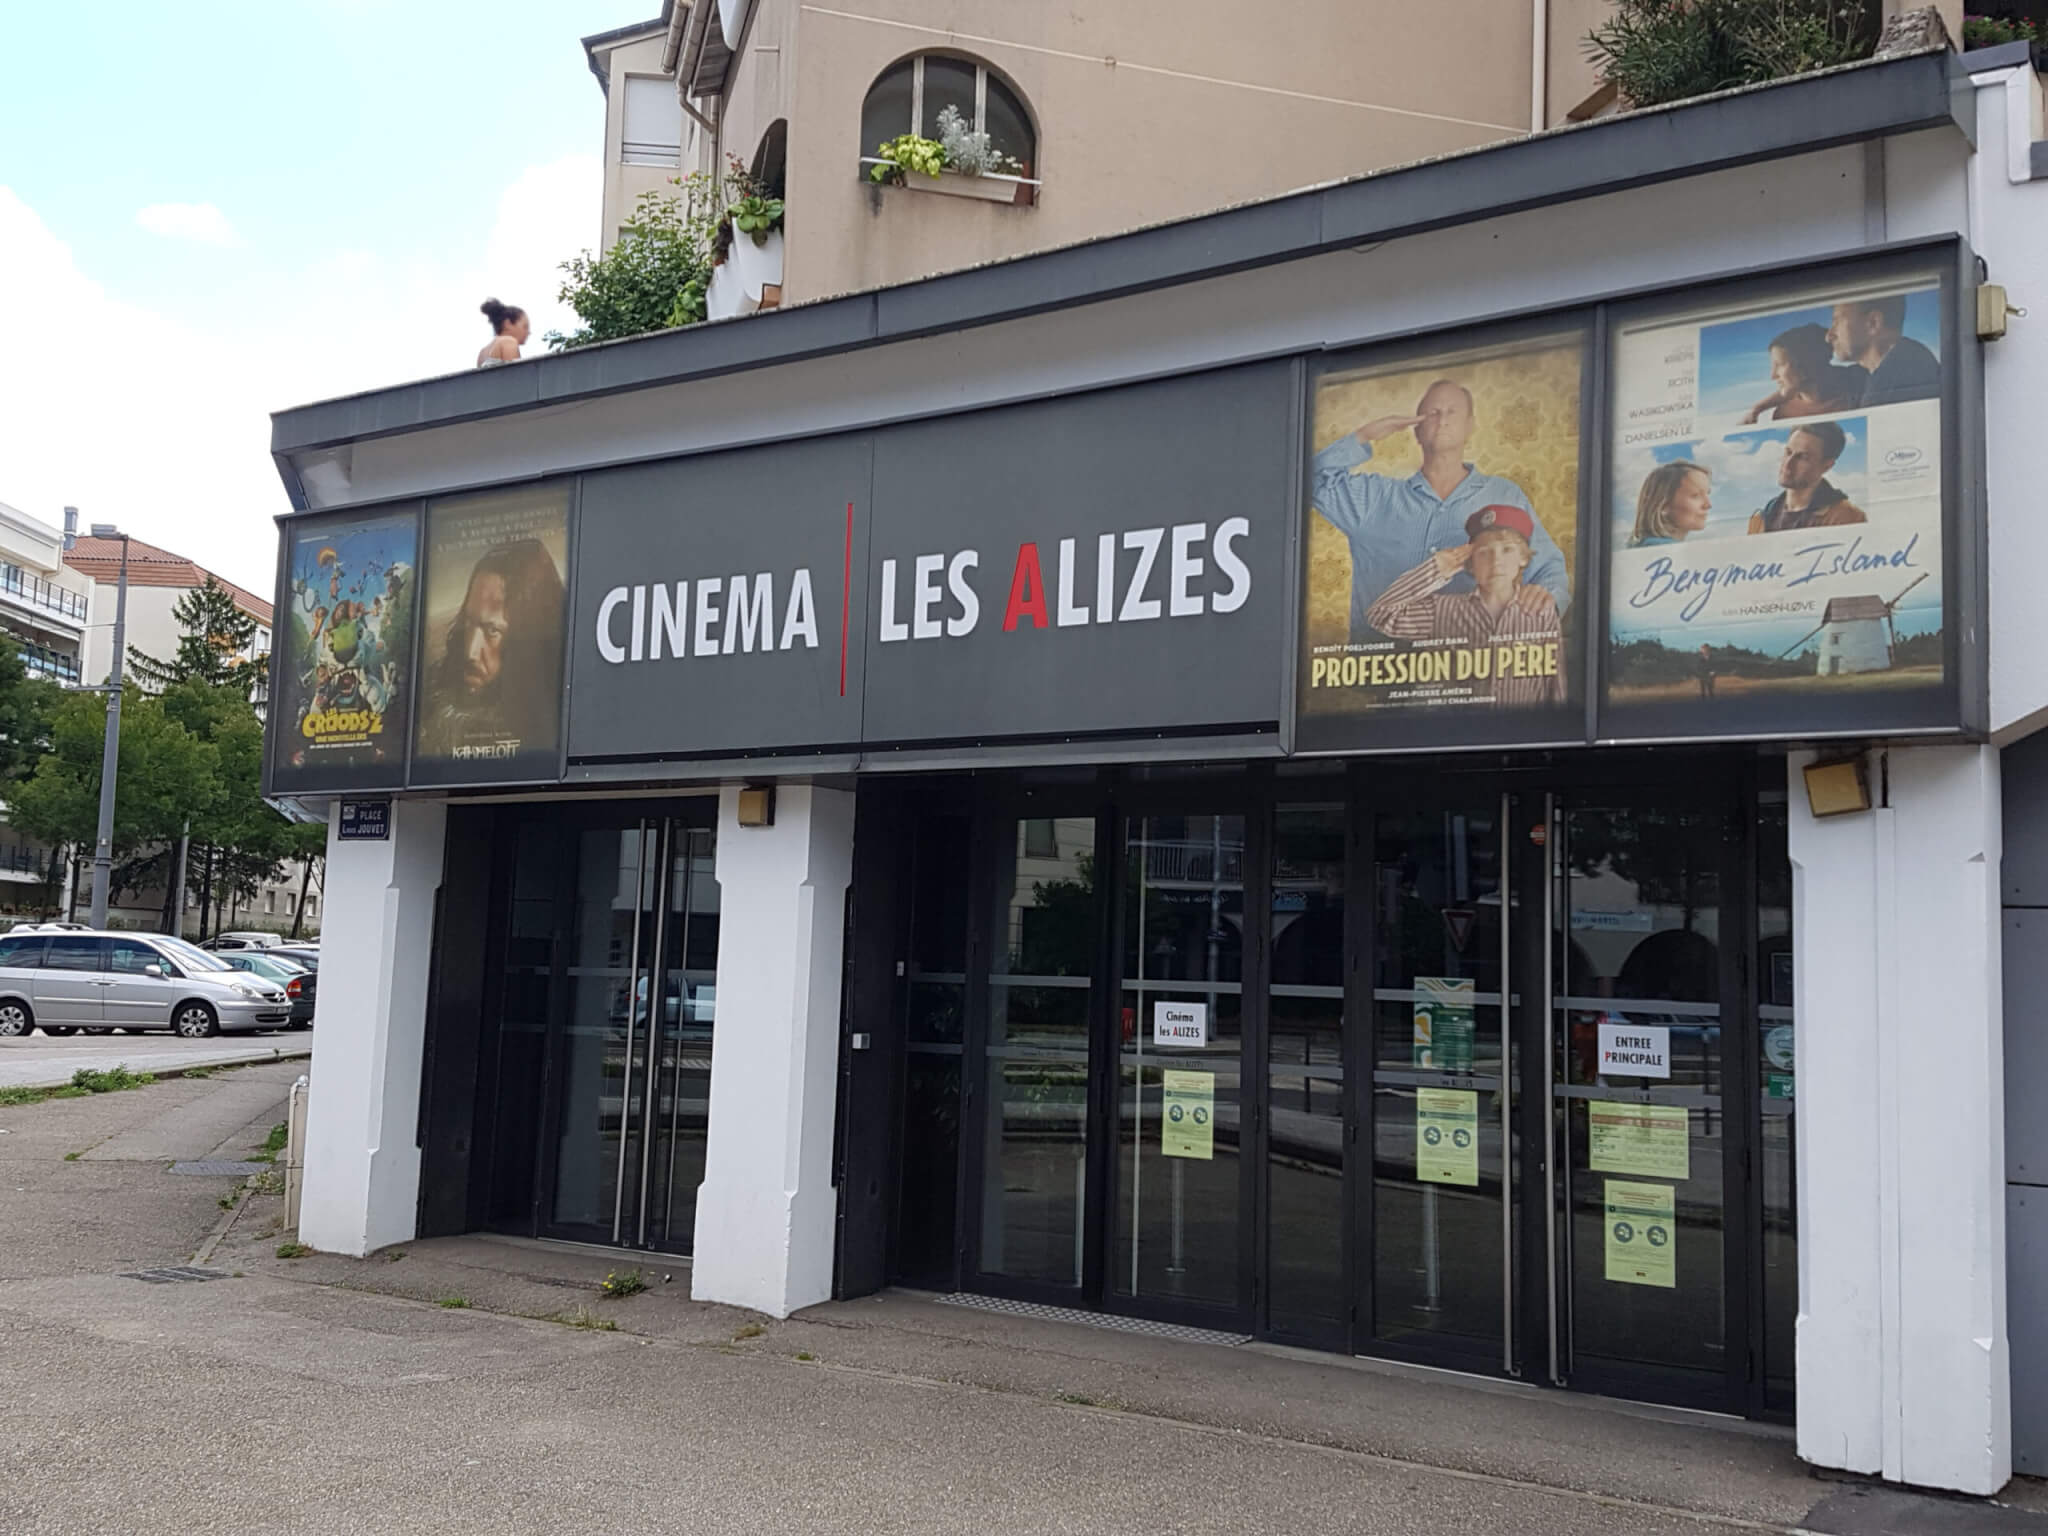 La devanture du cinéma Les Alizés, à Bron | crédit photo : Les Alizés